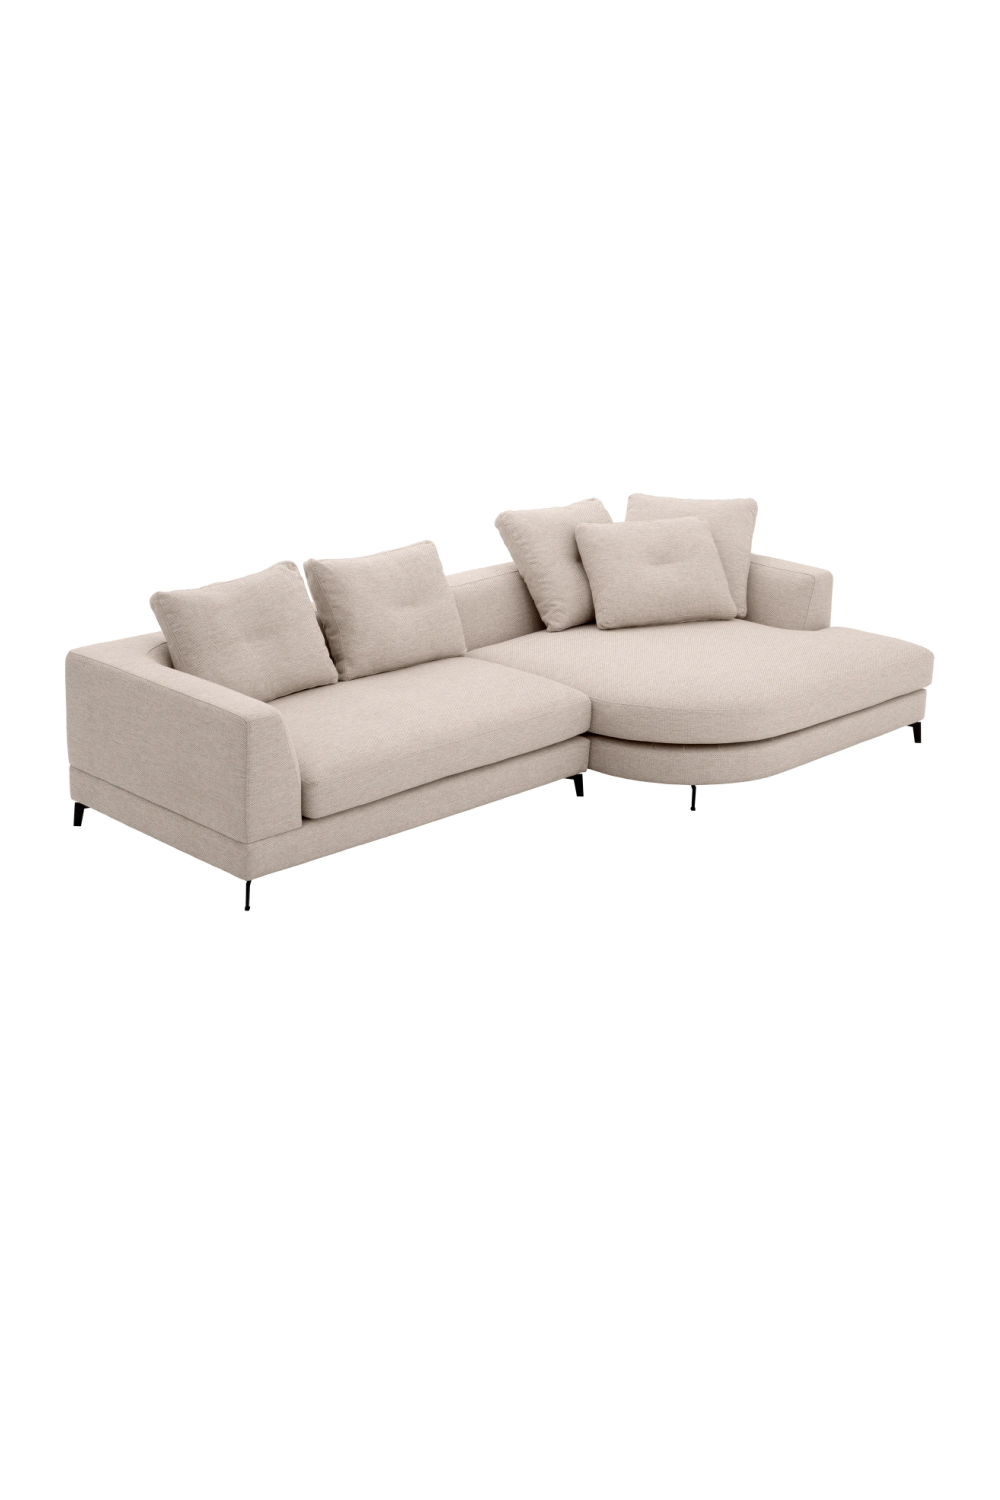 Beige Sectional Sofa S | Eichholtz Moderno | Oroa.com